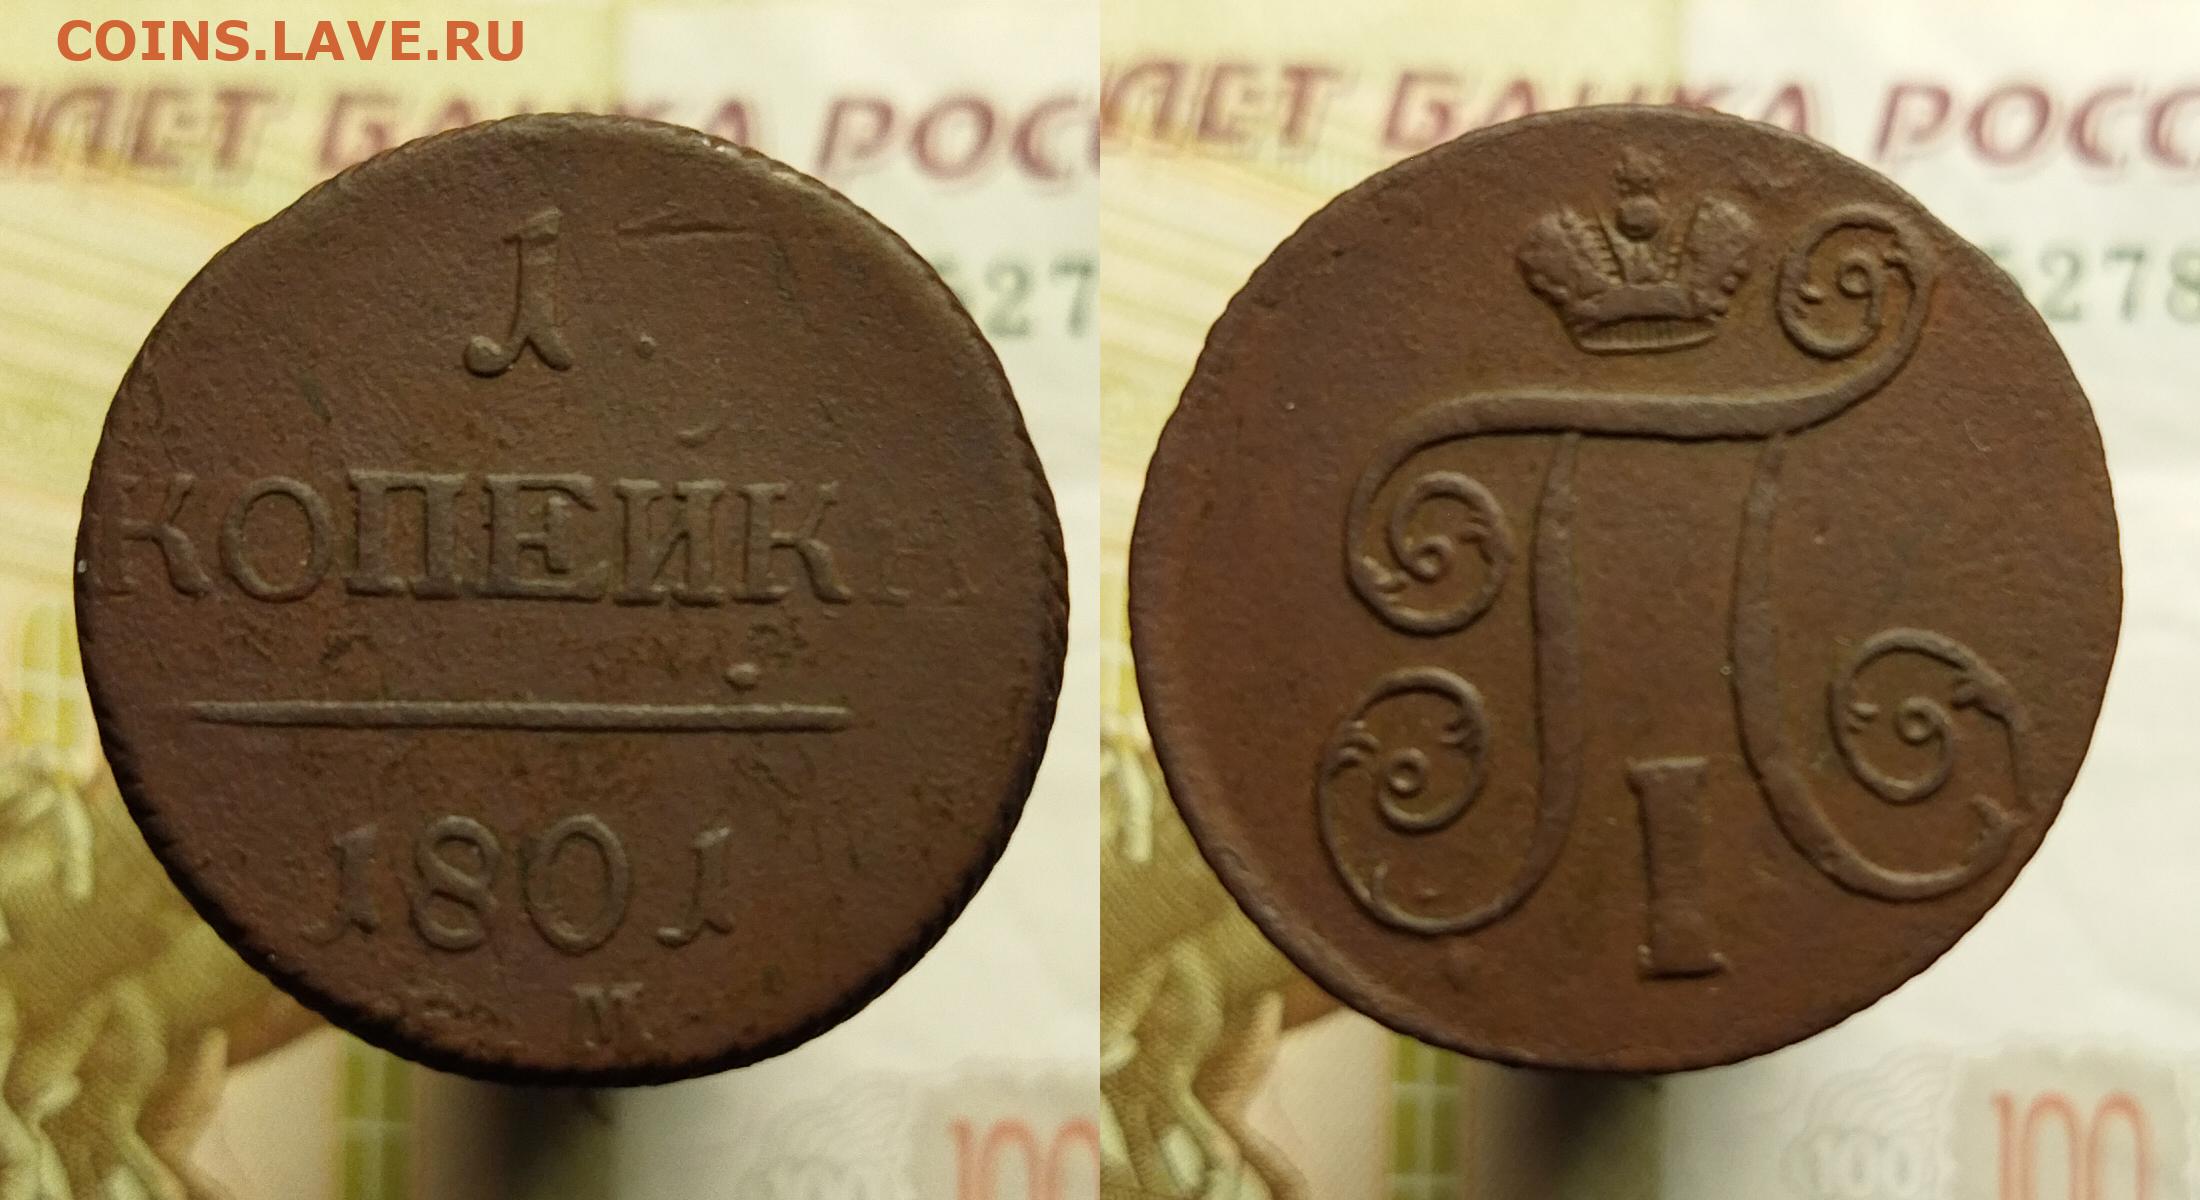 Сколько весит один пряник. История монеты 2 копейки 1801 года.